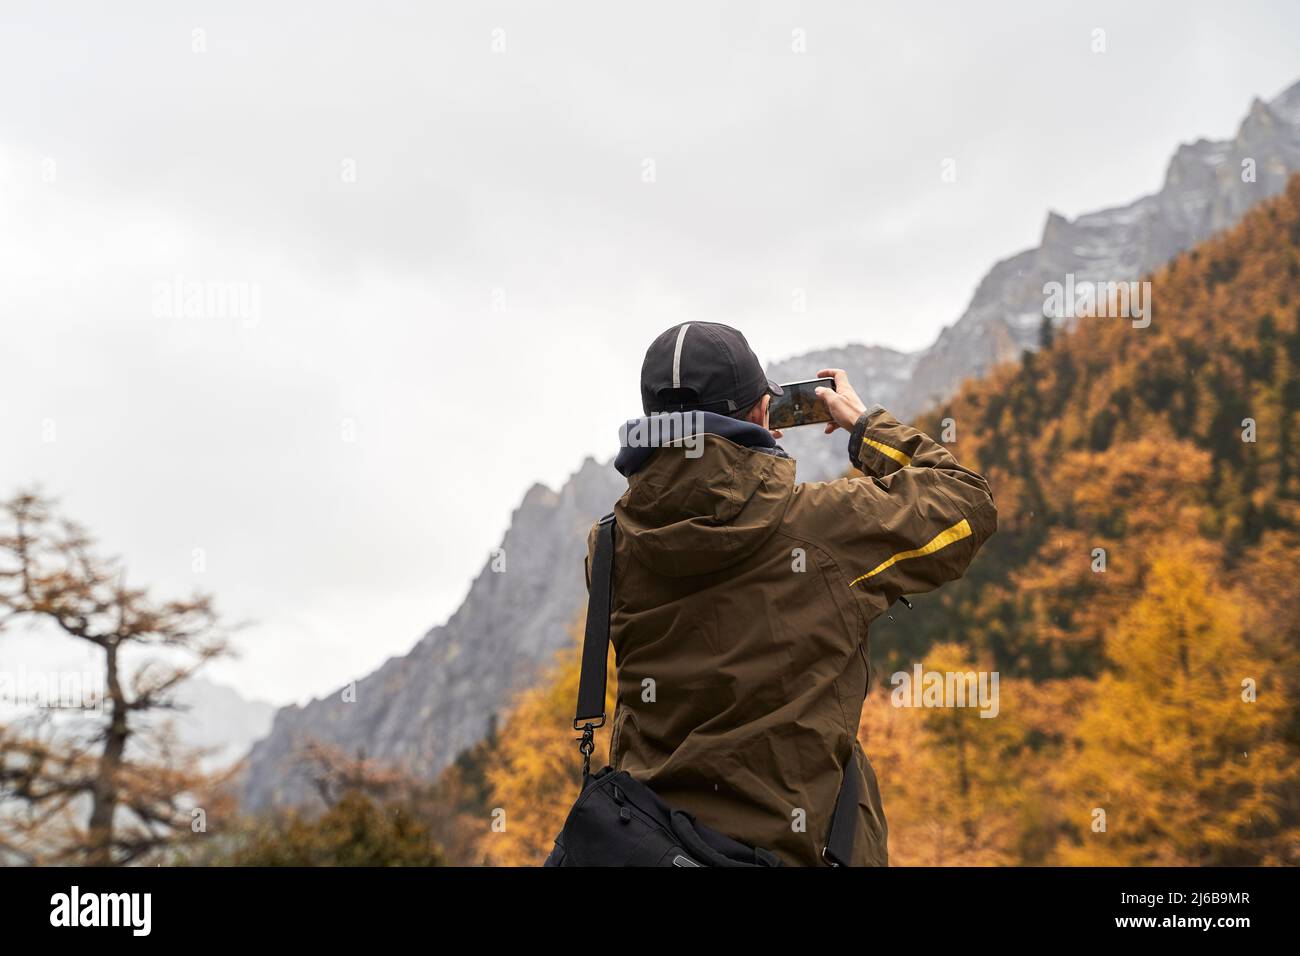 vue arrière d'un homme asiatique touriste prenant une photo de paysage de montagne et de feuillage d'automne à l'aide d'un téléphone portable Banque D'Images